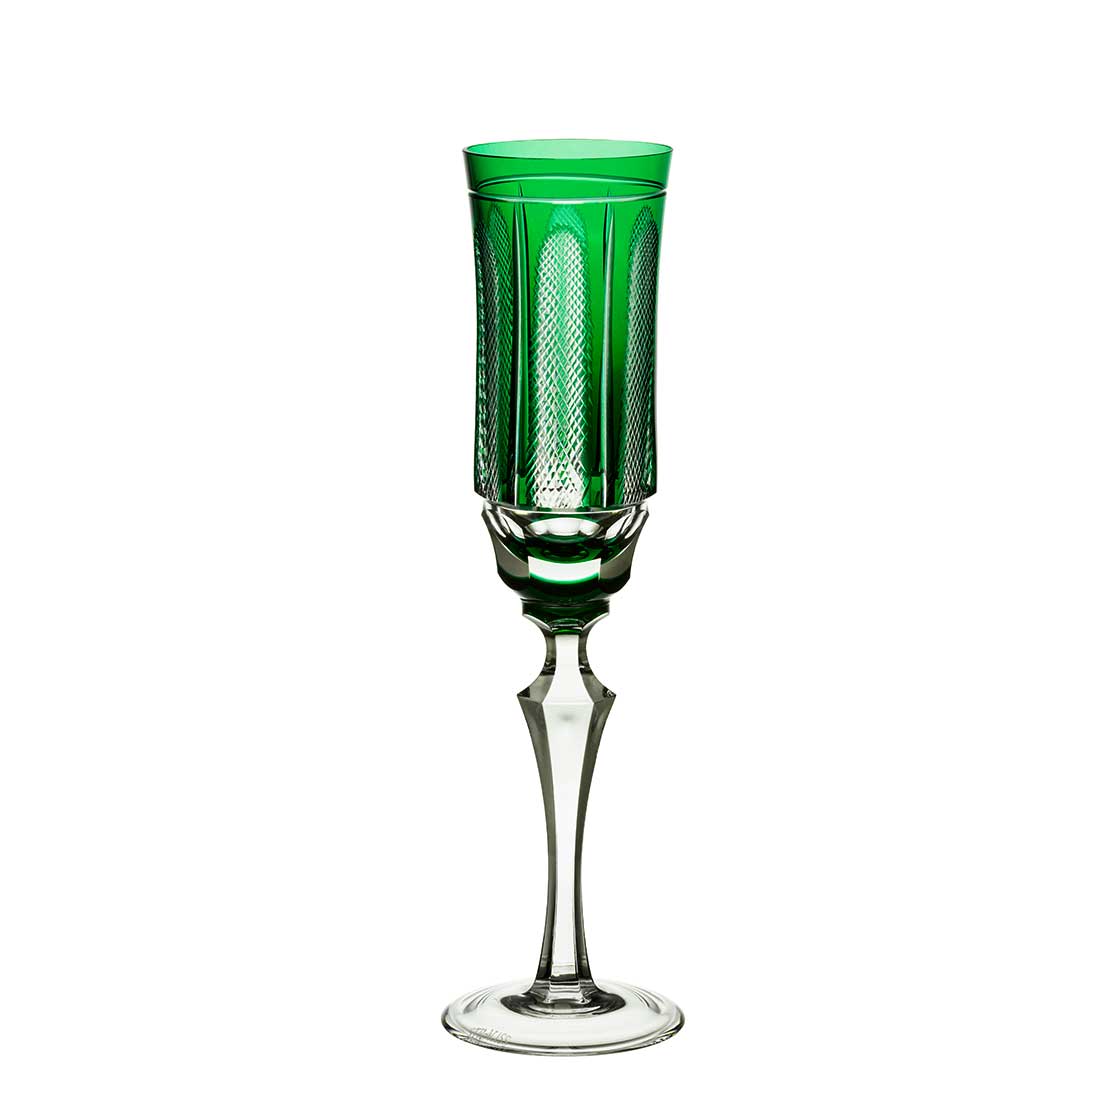 Taça de Cristal Strauss Champagne 240ml - Verde Escuro - 237.107.151.014